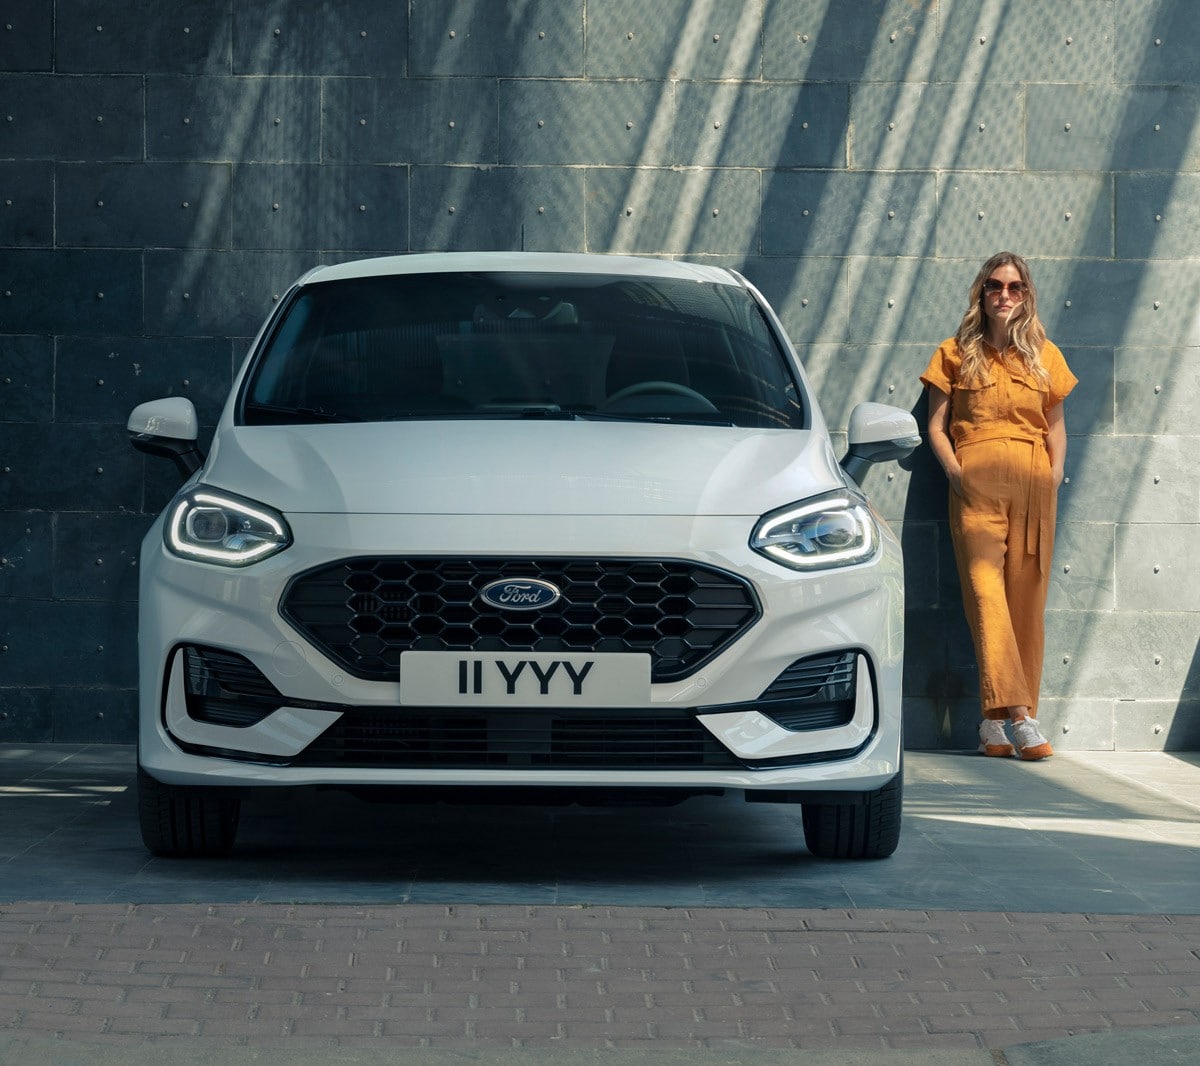 Ford Fiesta bianca. Vista frontale, in fase di parcheggio davanti a un edificio moderno con accanto una donna.